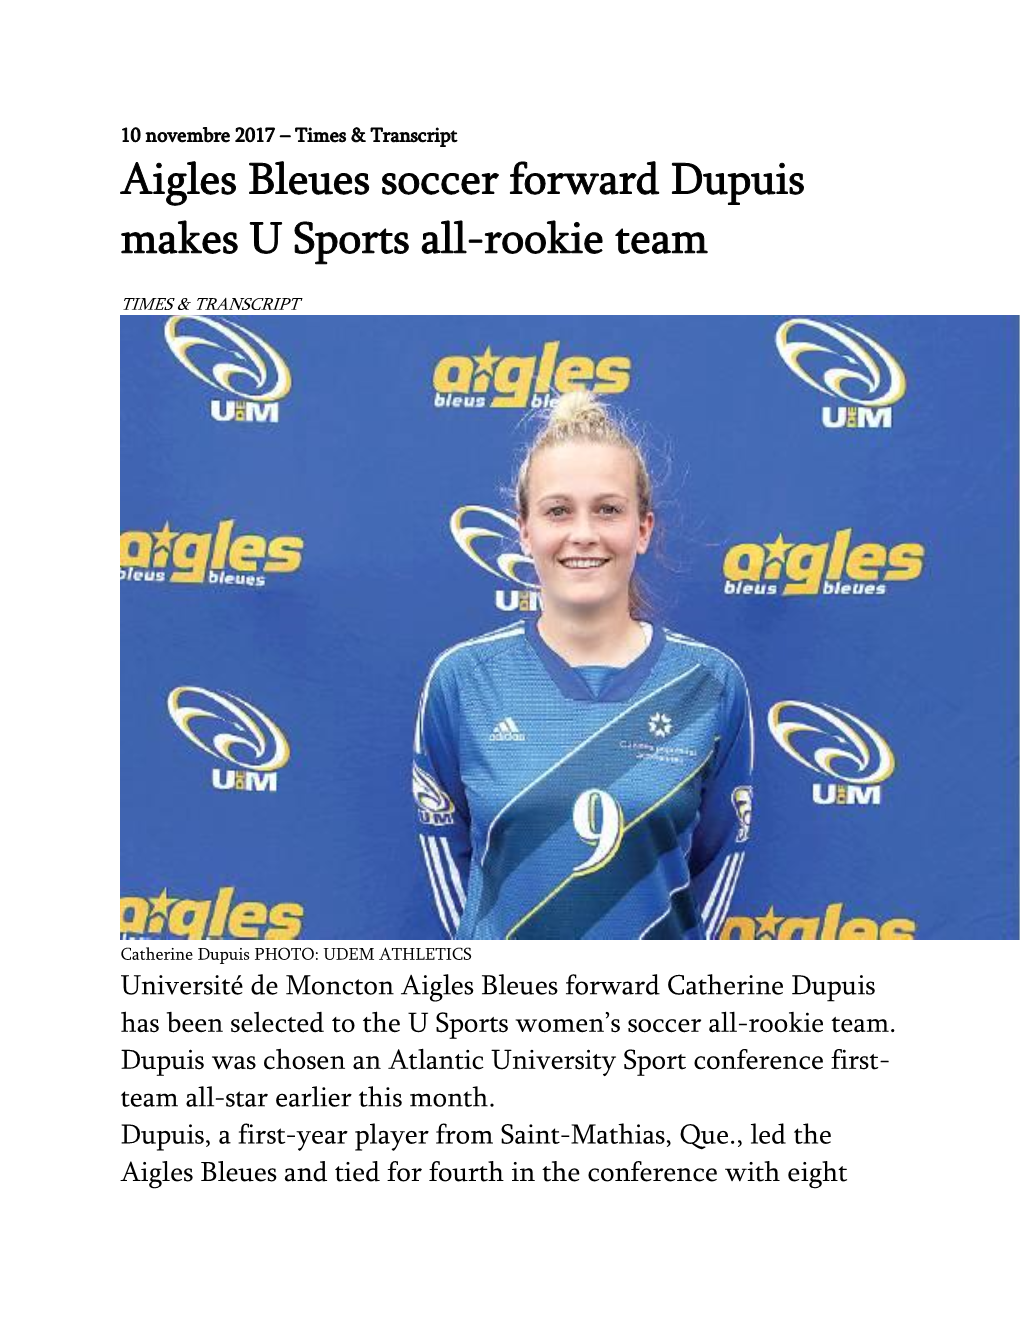 Aigles Bleues Soccer Forward Dupuis Makes U Sports All-Rookie Team